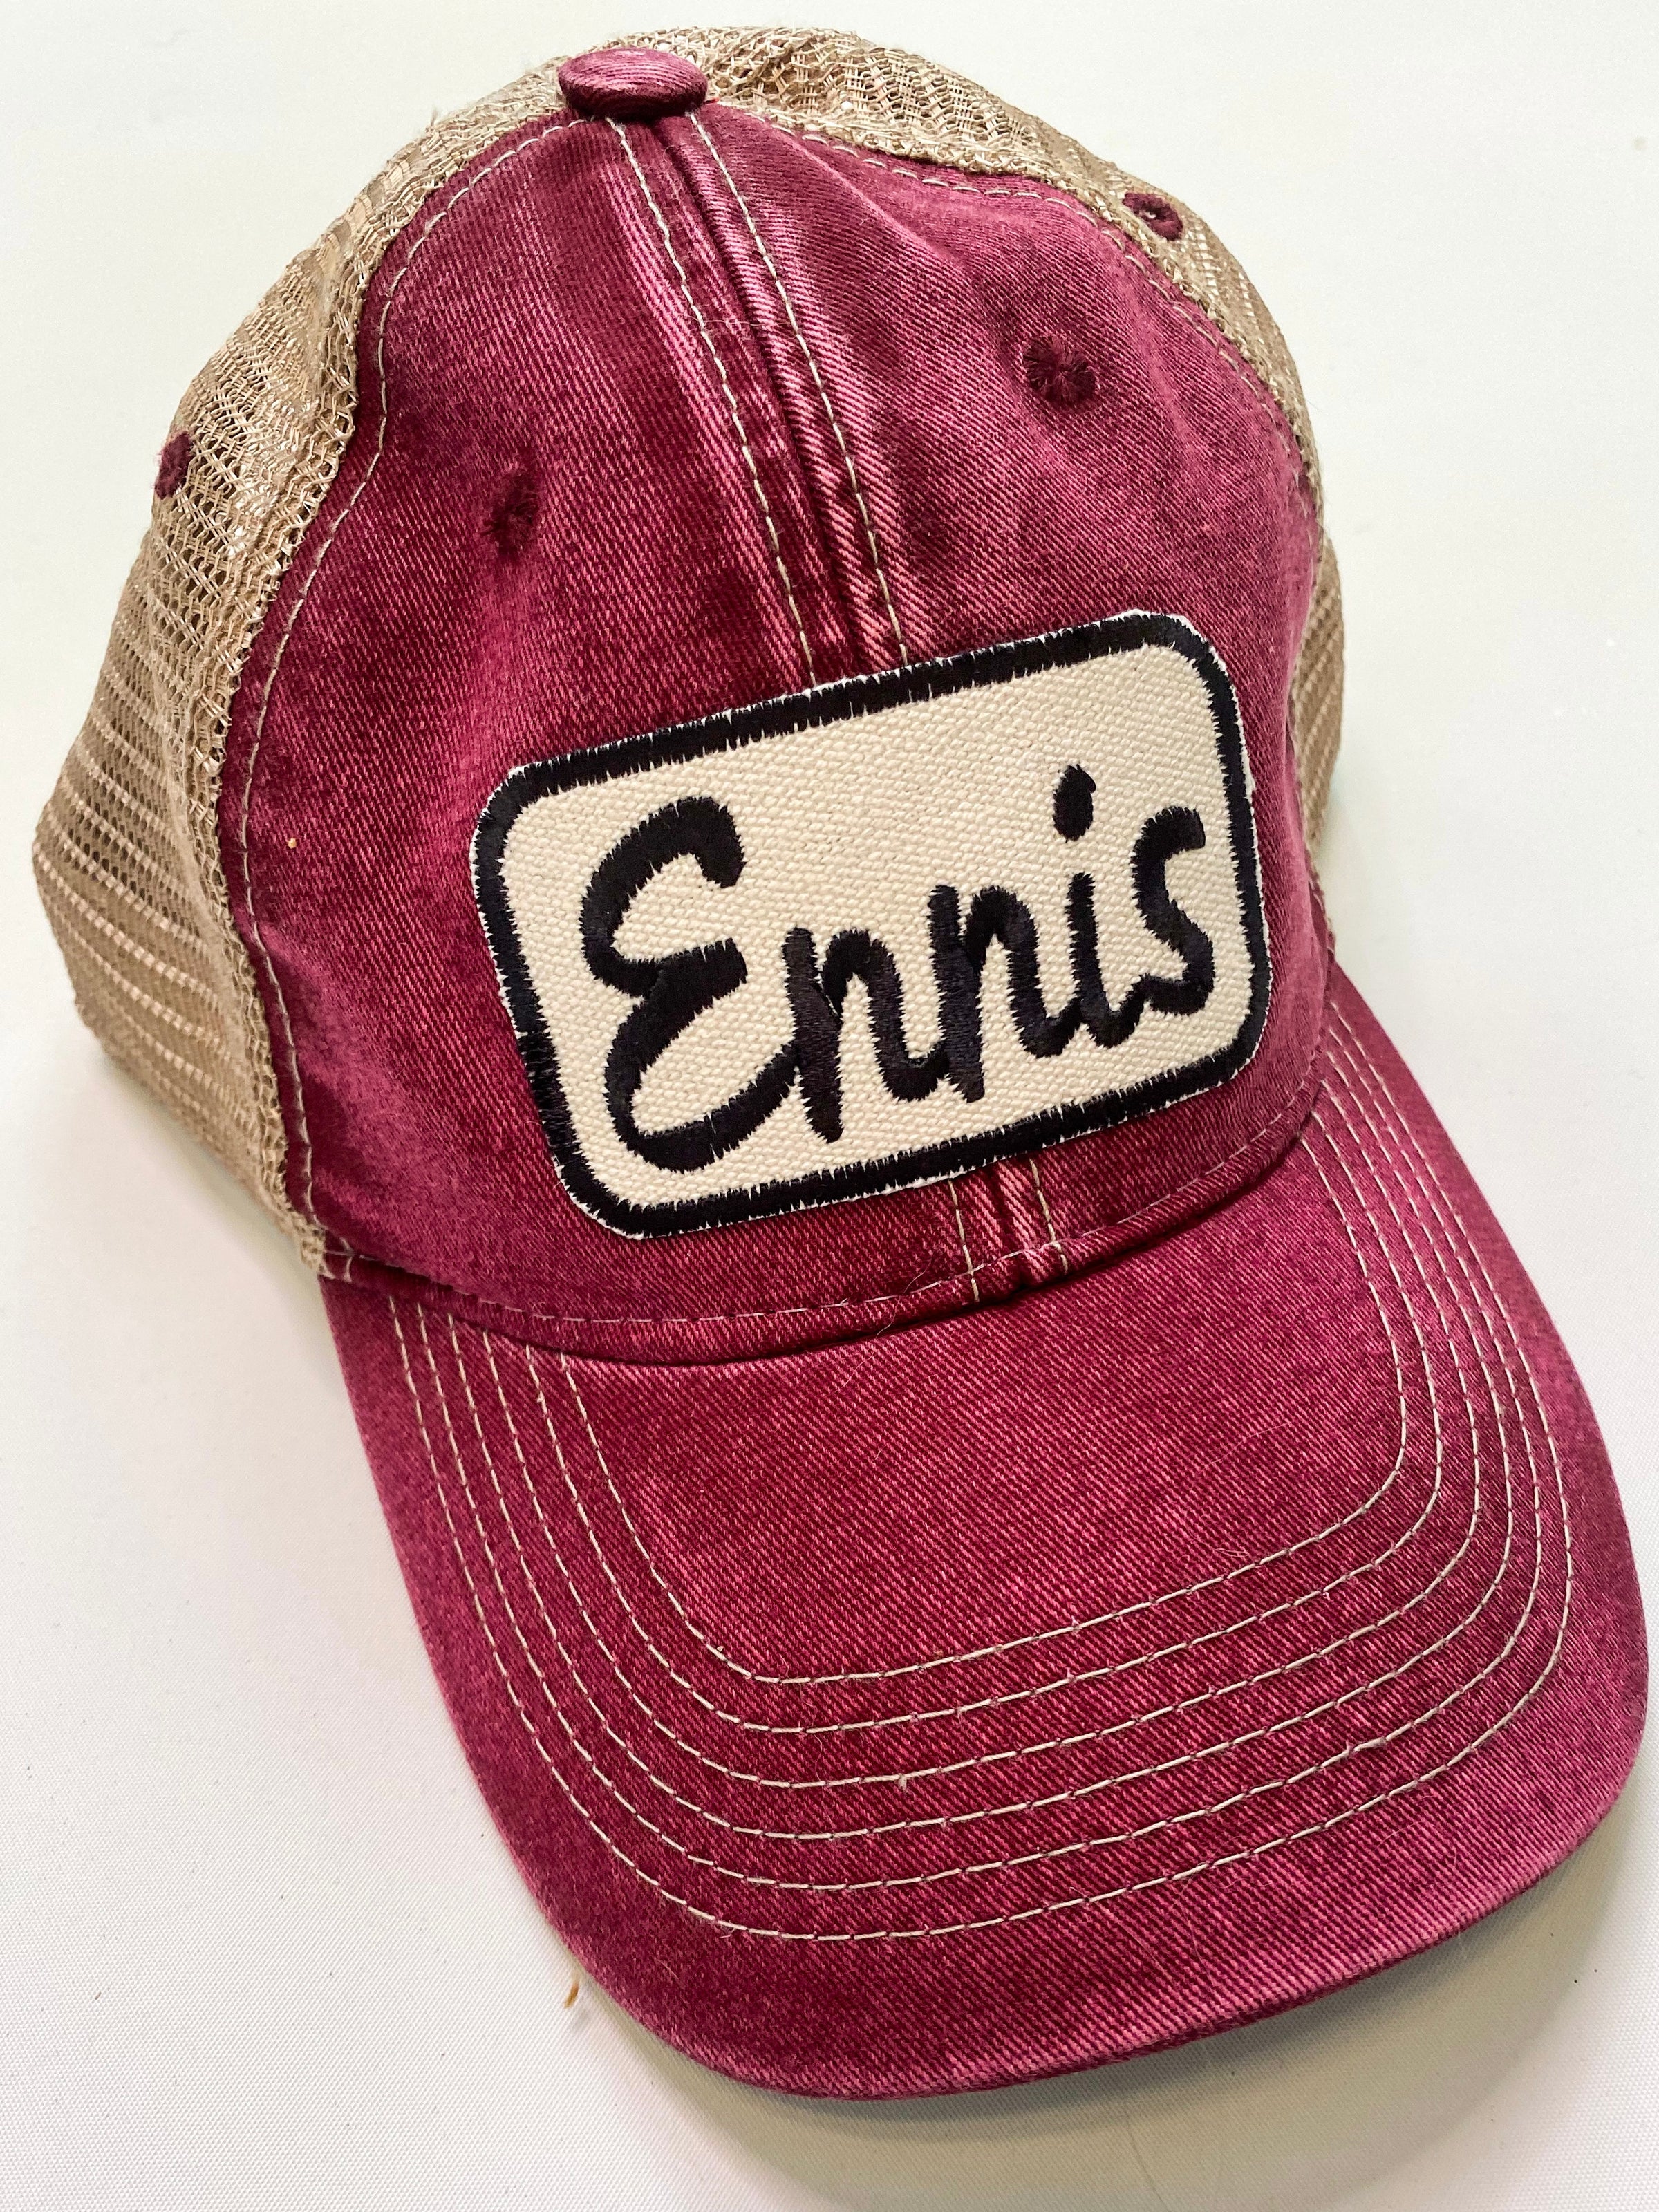 Vintage Distressed “Ennis” Hat